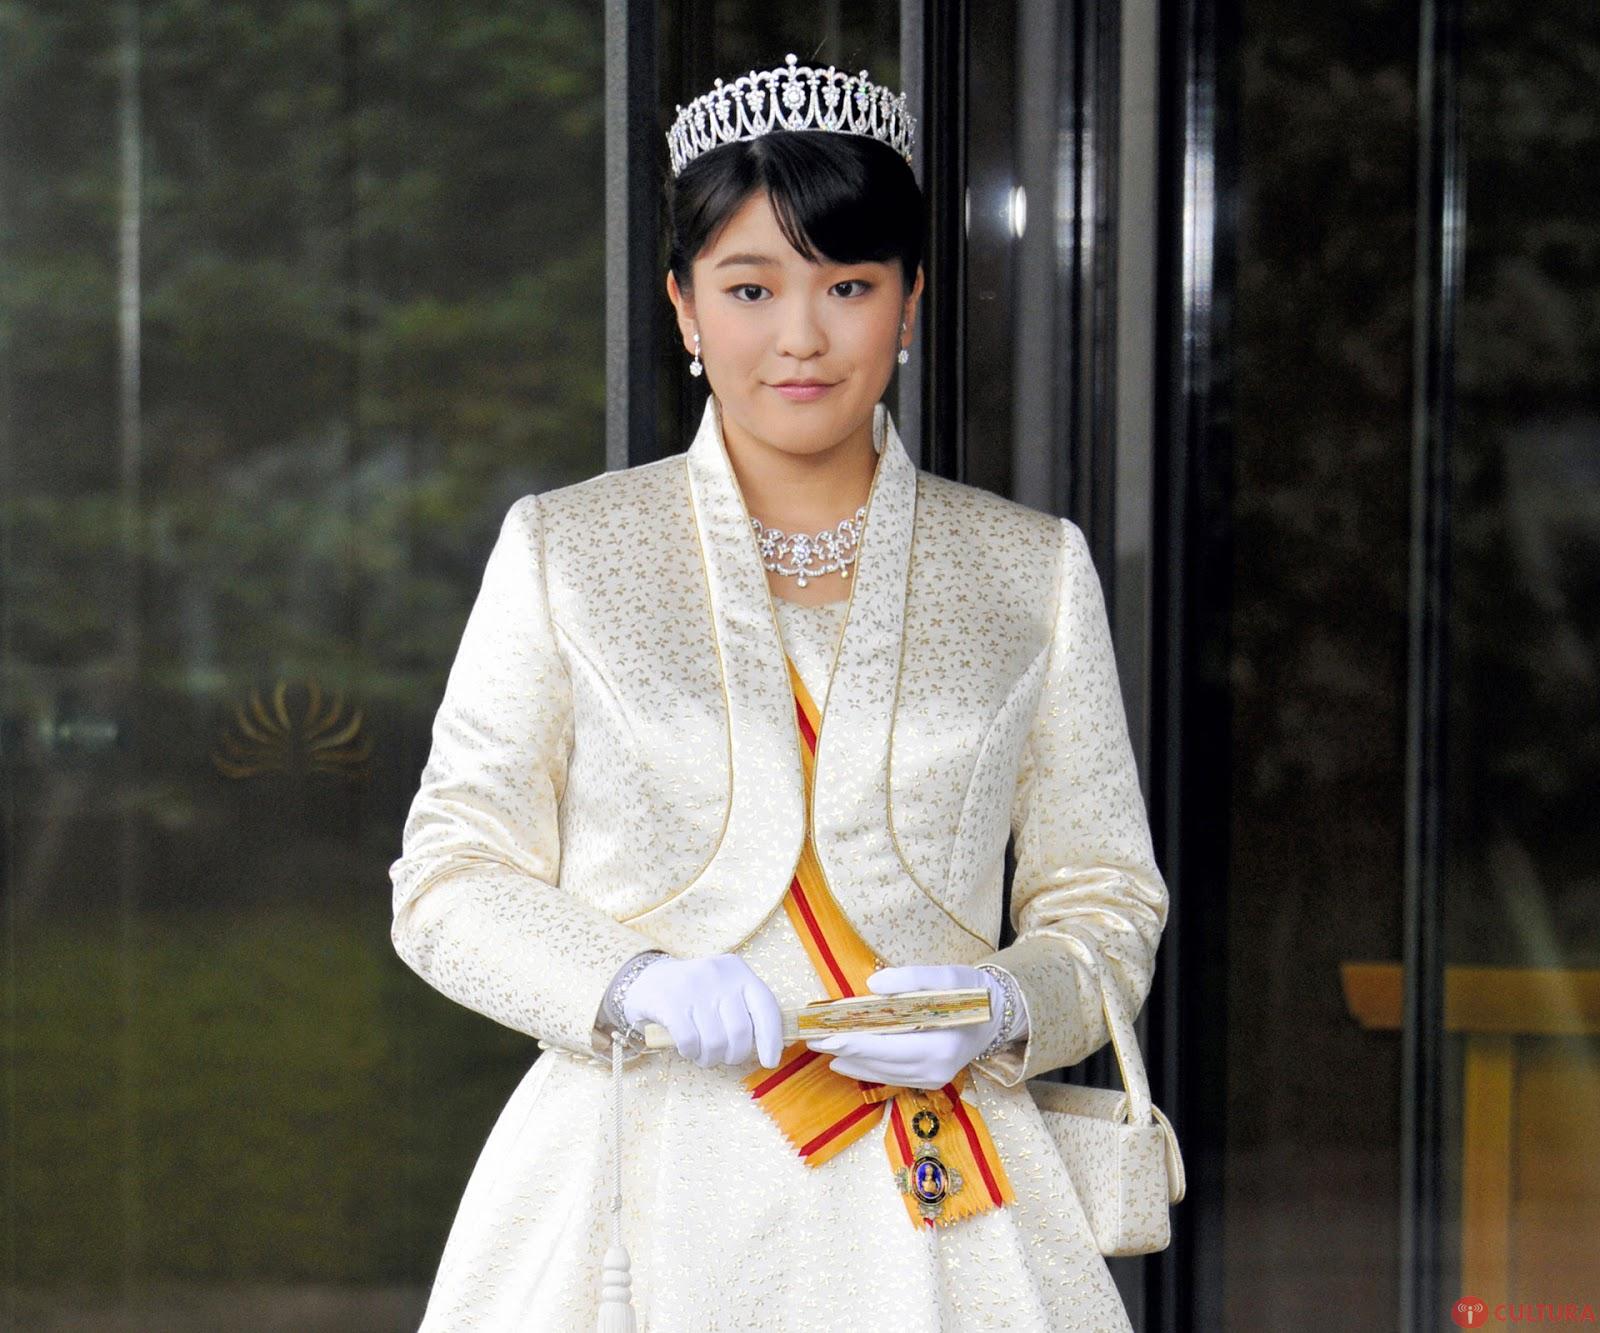 Японская внучка видео. Принцесса мако Акисино. Принцесса мако Акисино свадьба. Принцесса како Акисино. Принцесса мако Акисино фото.